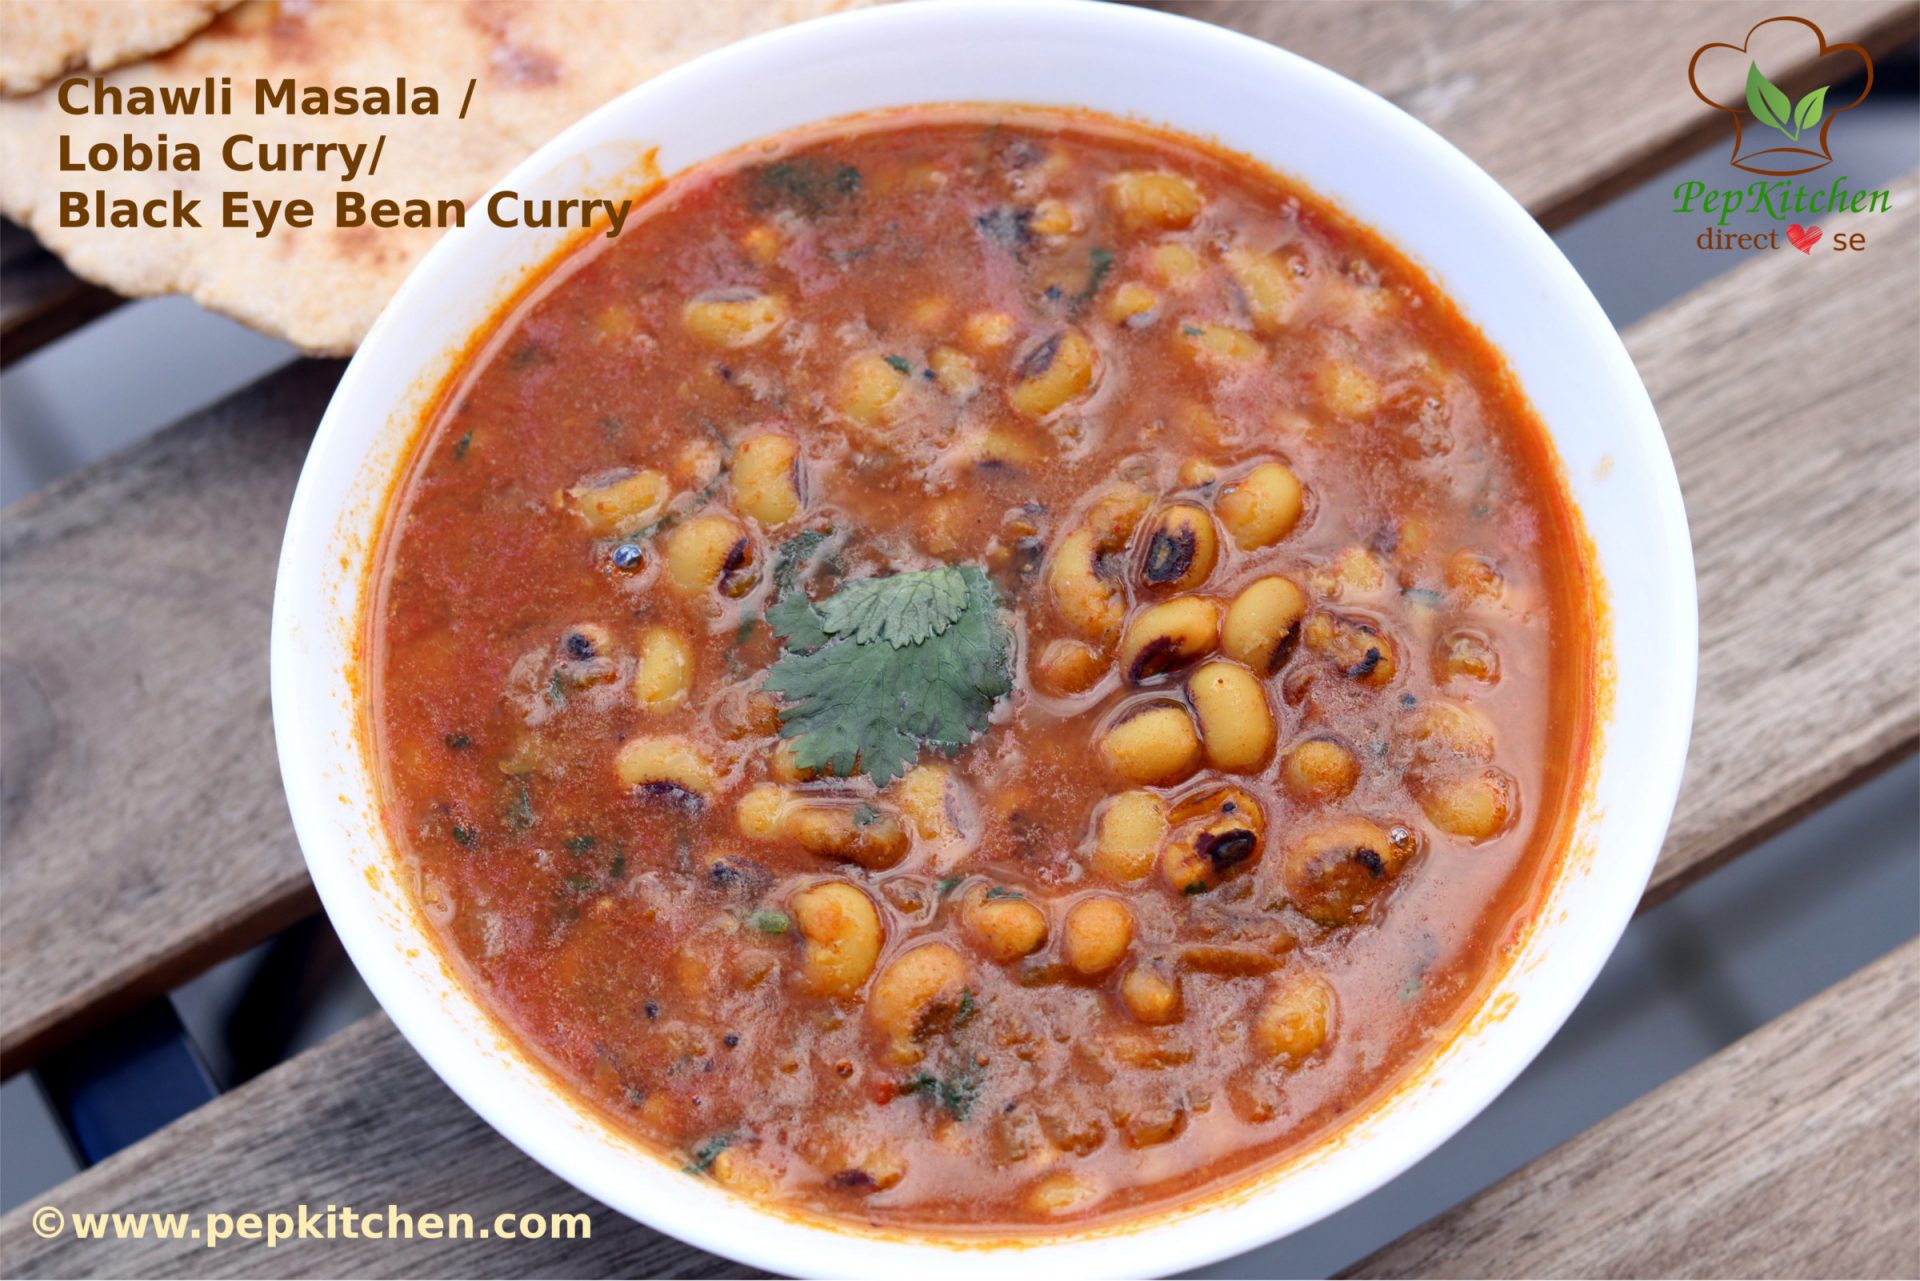 Chawli Masala / Lobia Curry / Black Eye Bean Curry